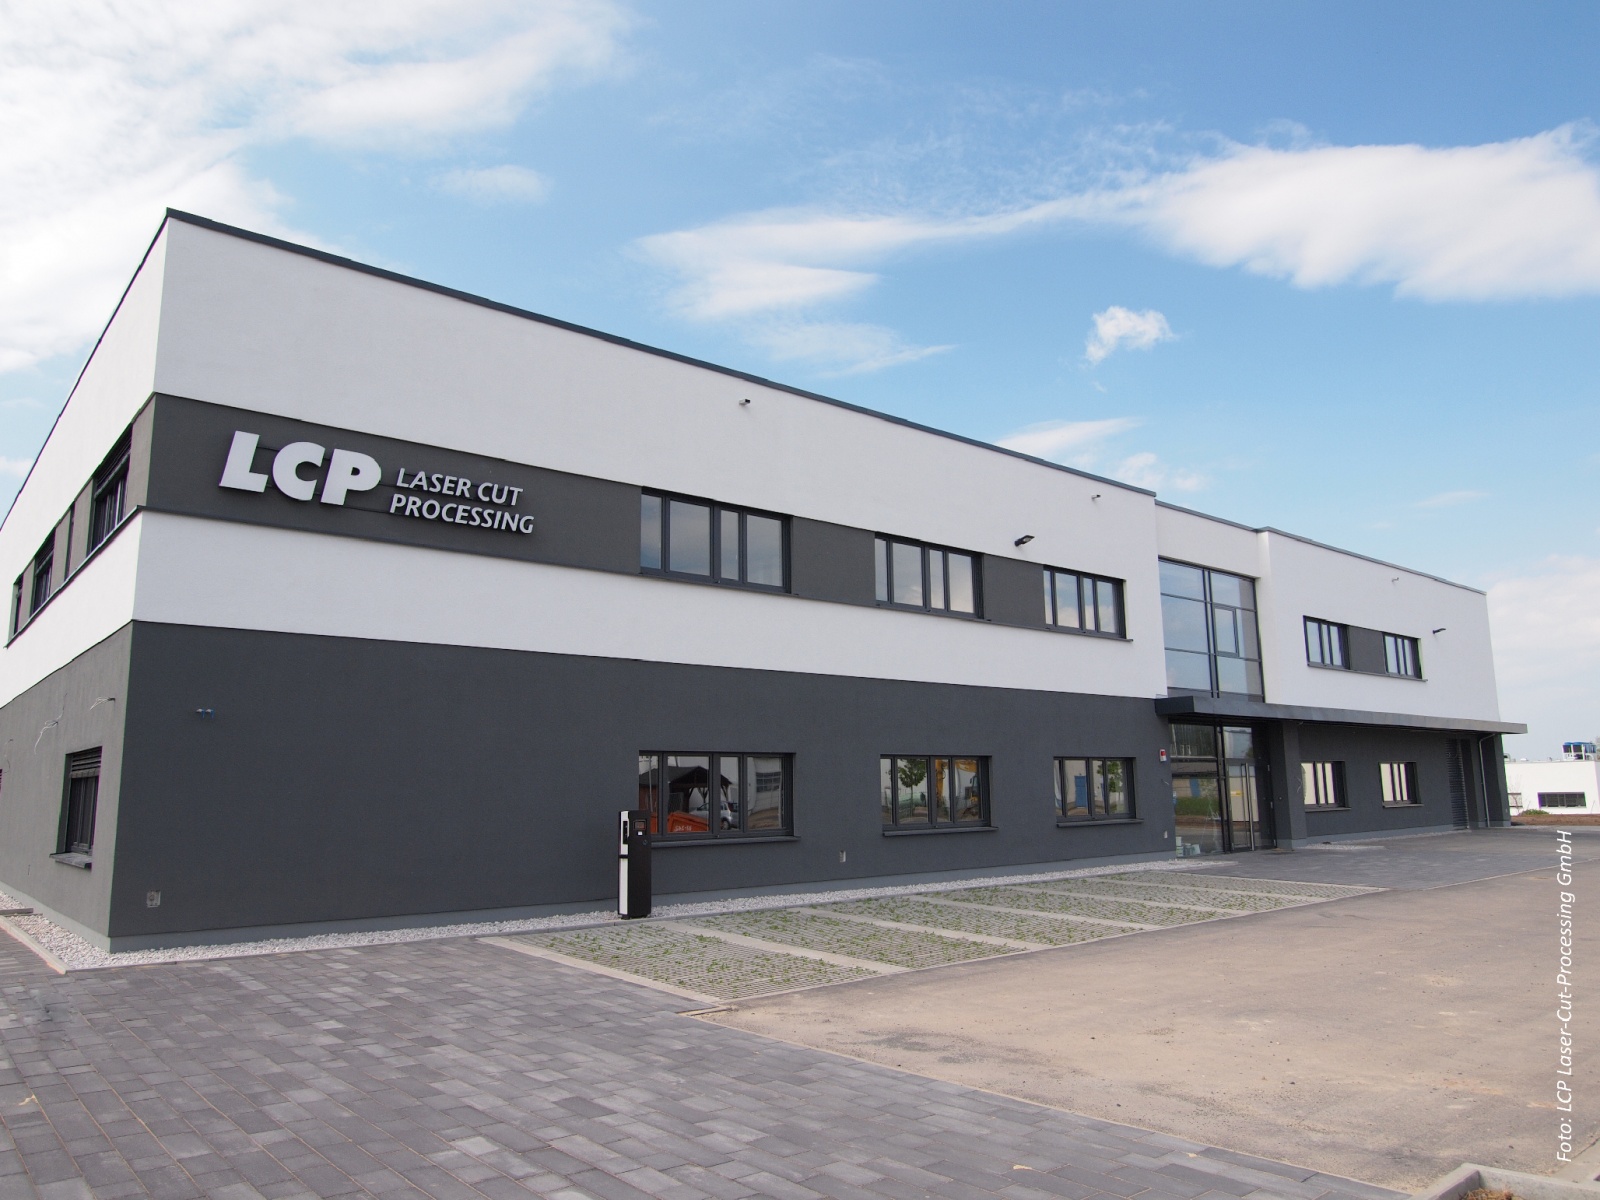 Produktionsstätte LCP, Neubau Produktionsstätte Werk IV der LCP GmbH aus Hermsdorf, Bild: Linda Riedel